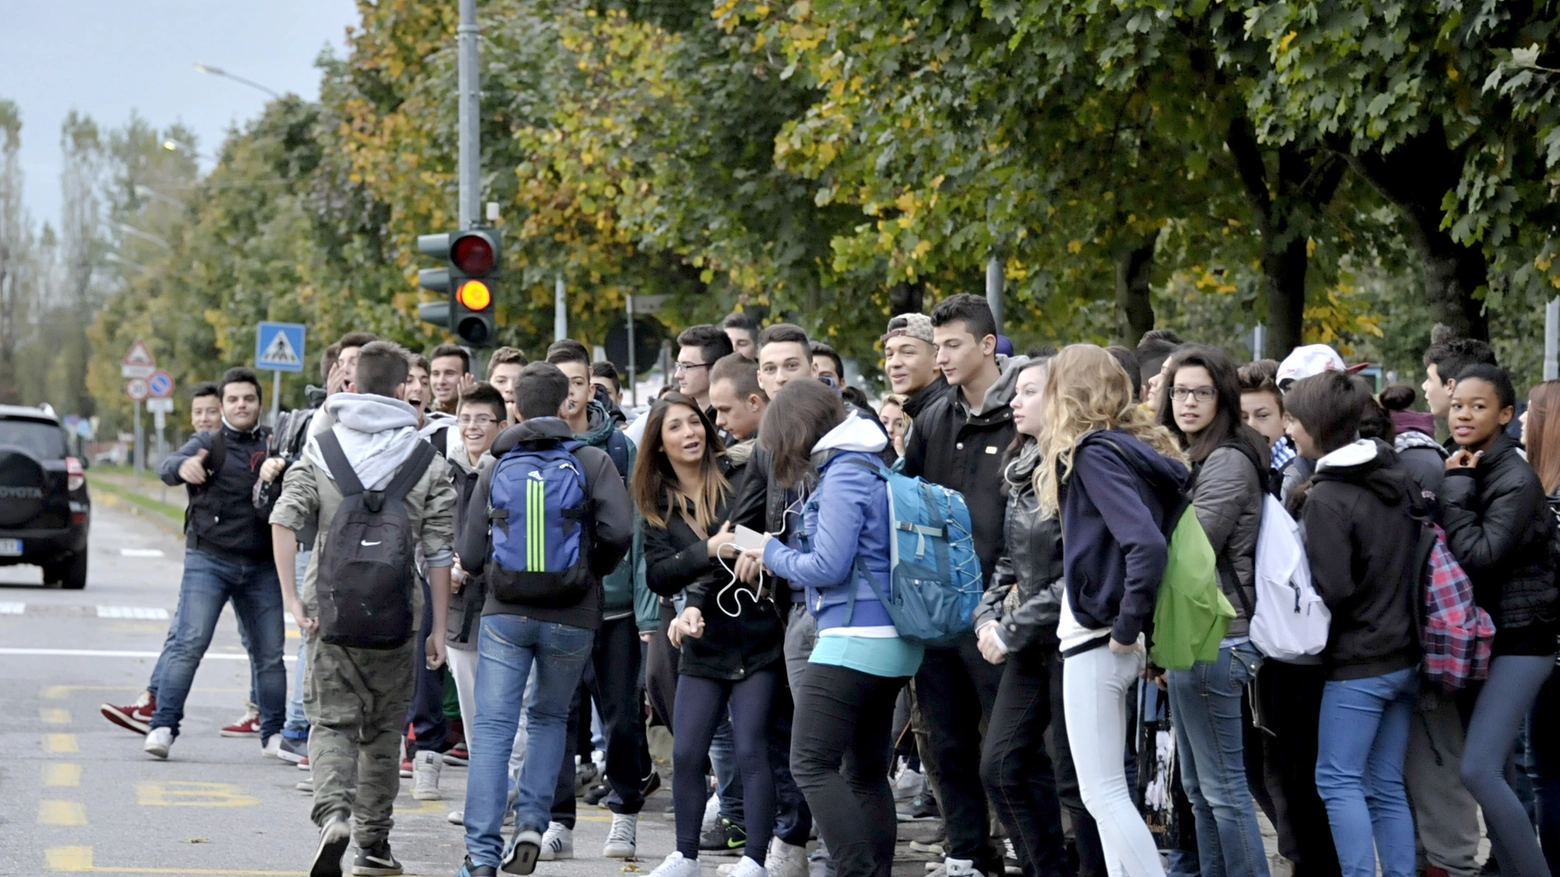 Studenti e pendolari in attesa del bus (Spf)